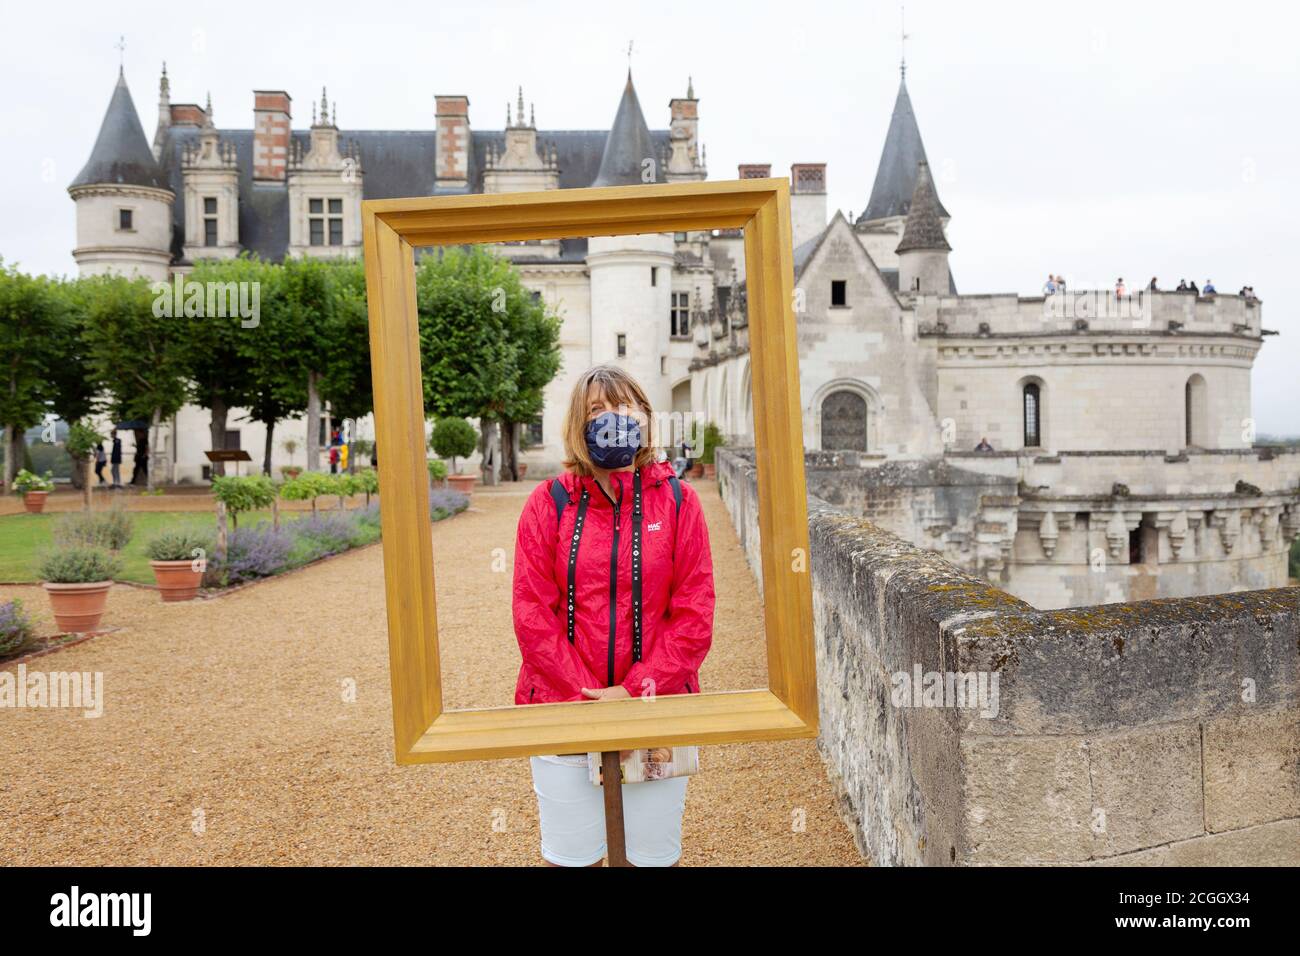 Covid 19 Voyage. Un touriste anglais posant pour une photo à Château Amboise, France, pendant la pandémie, août 2020. (Le touriste principal est le modèle libéré). Banque D'Images